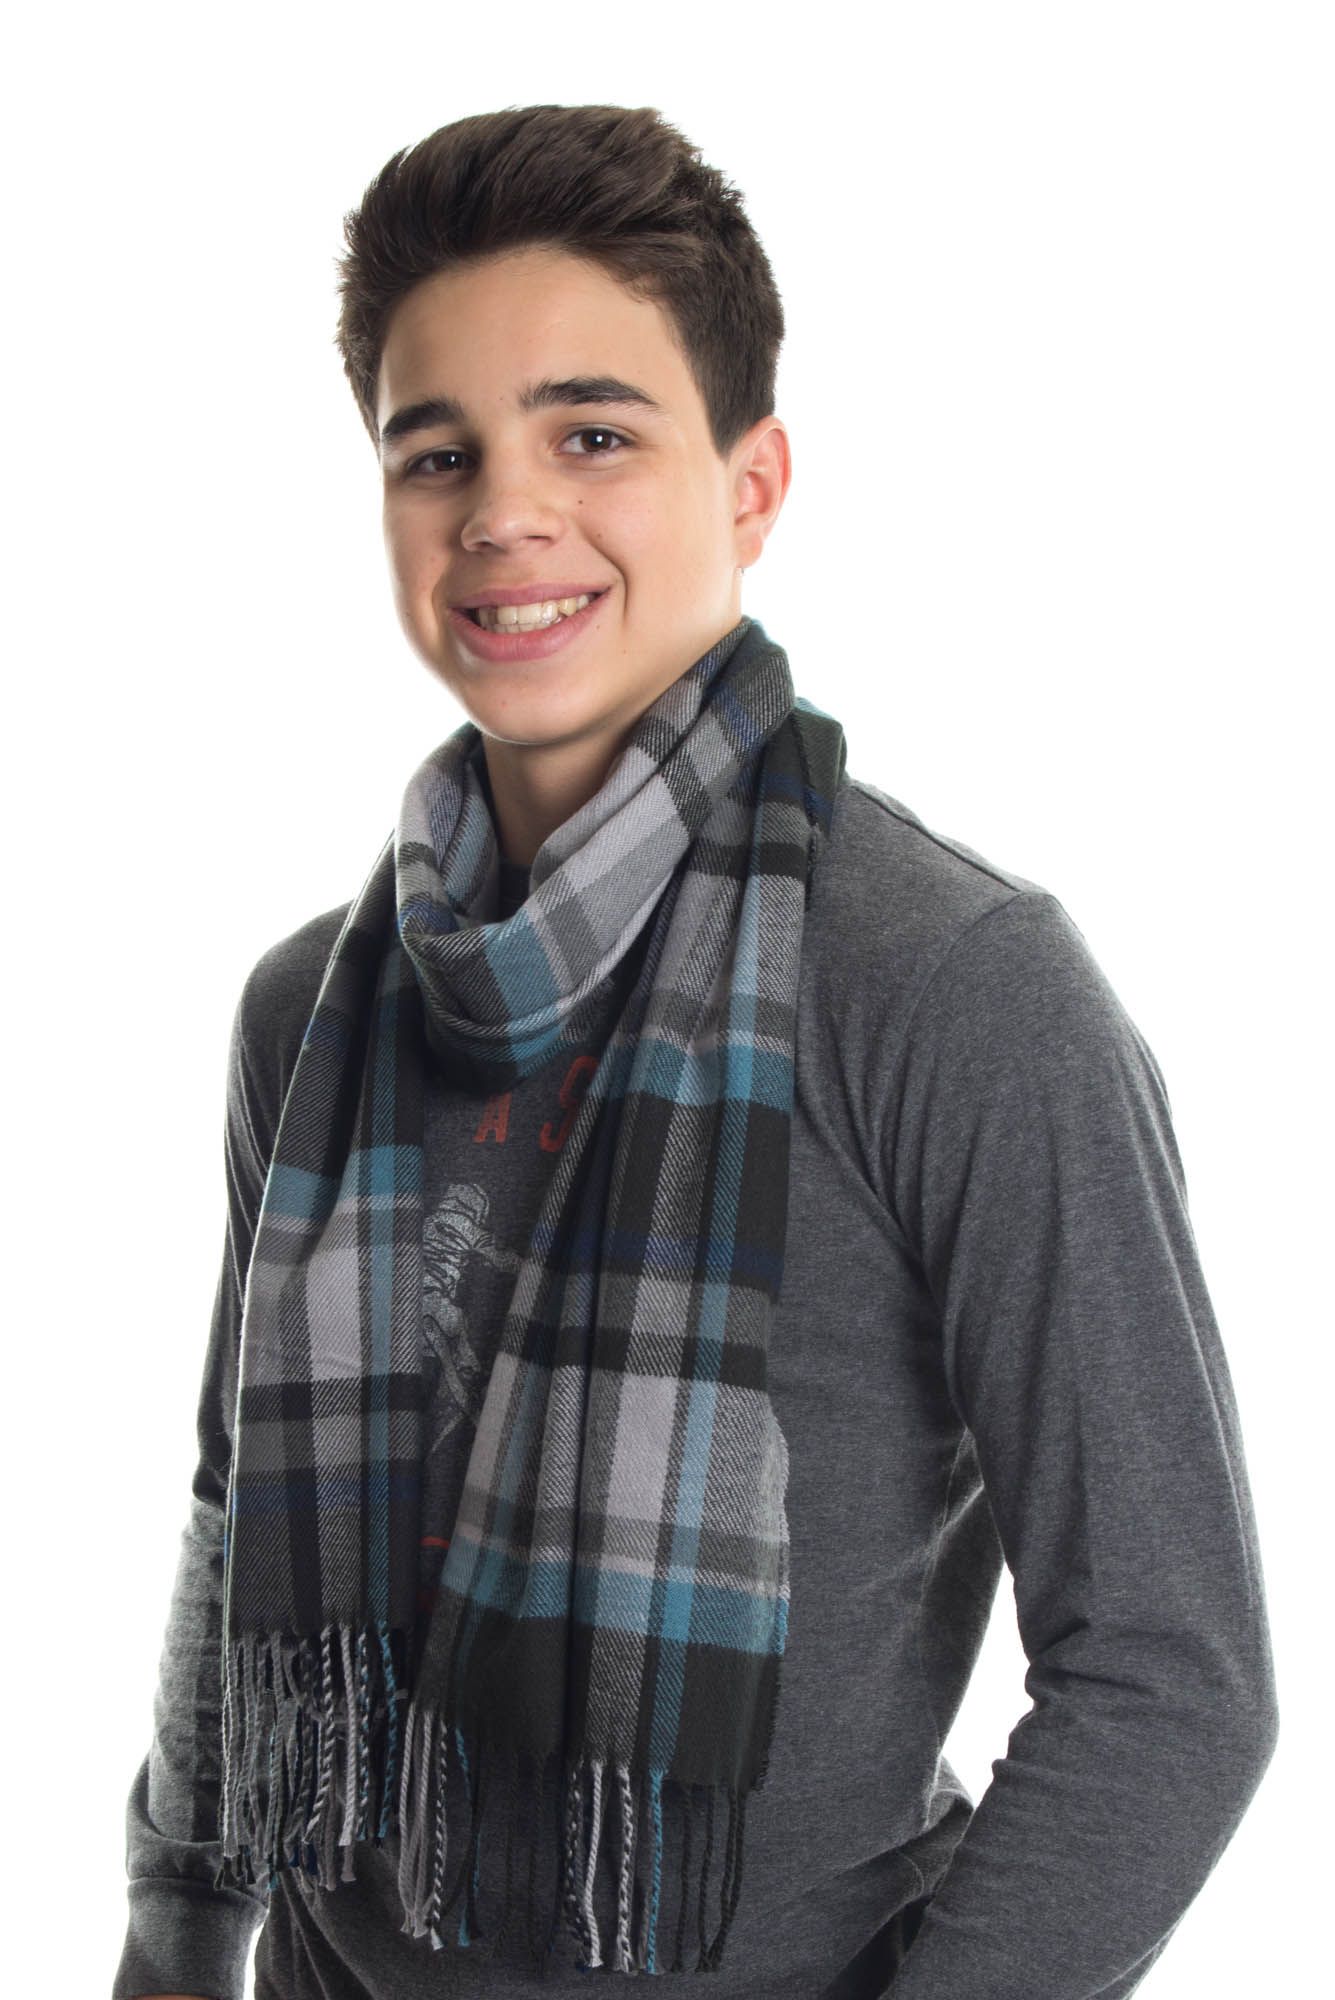 cashmere scarf mens